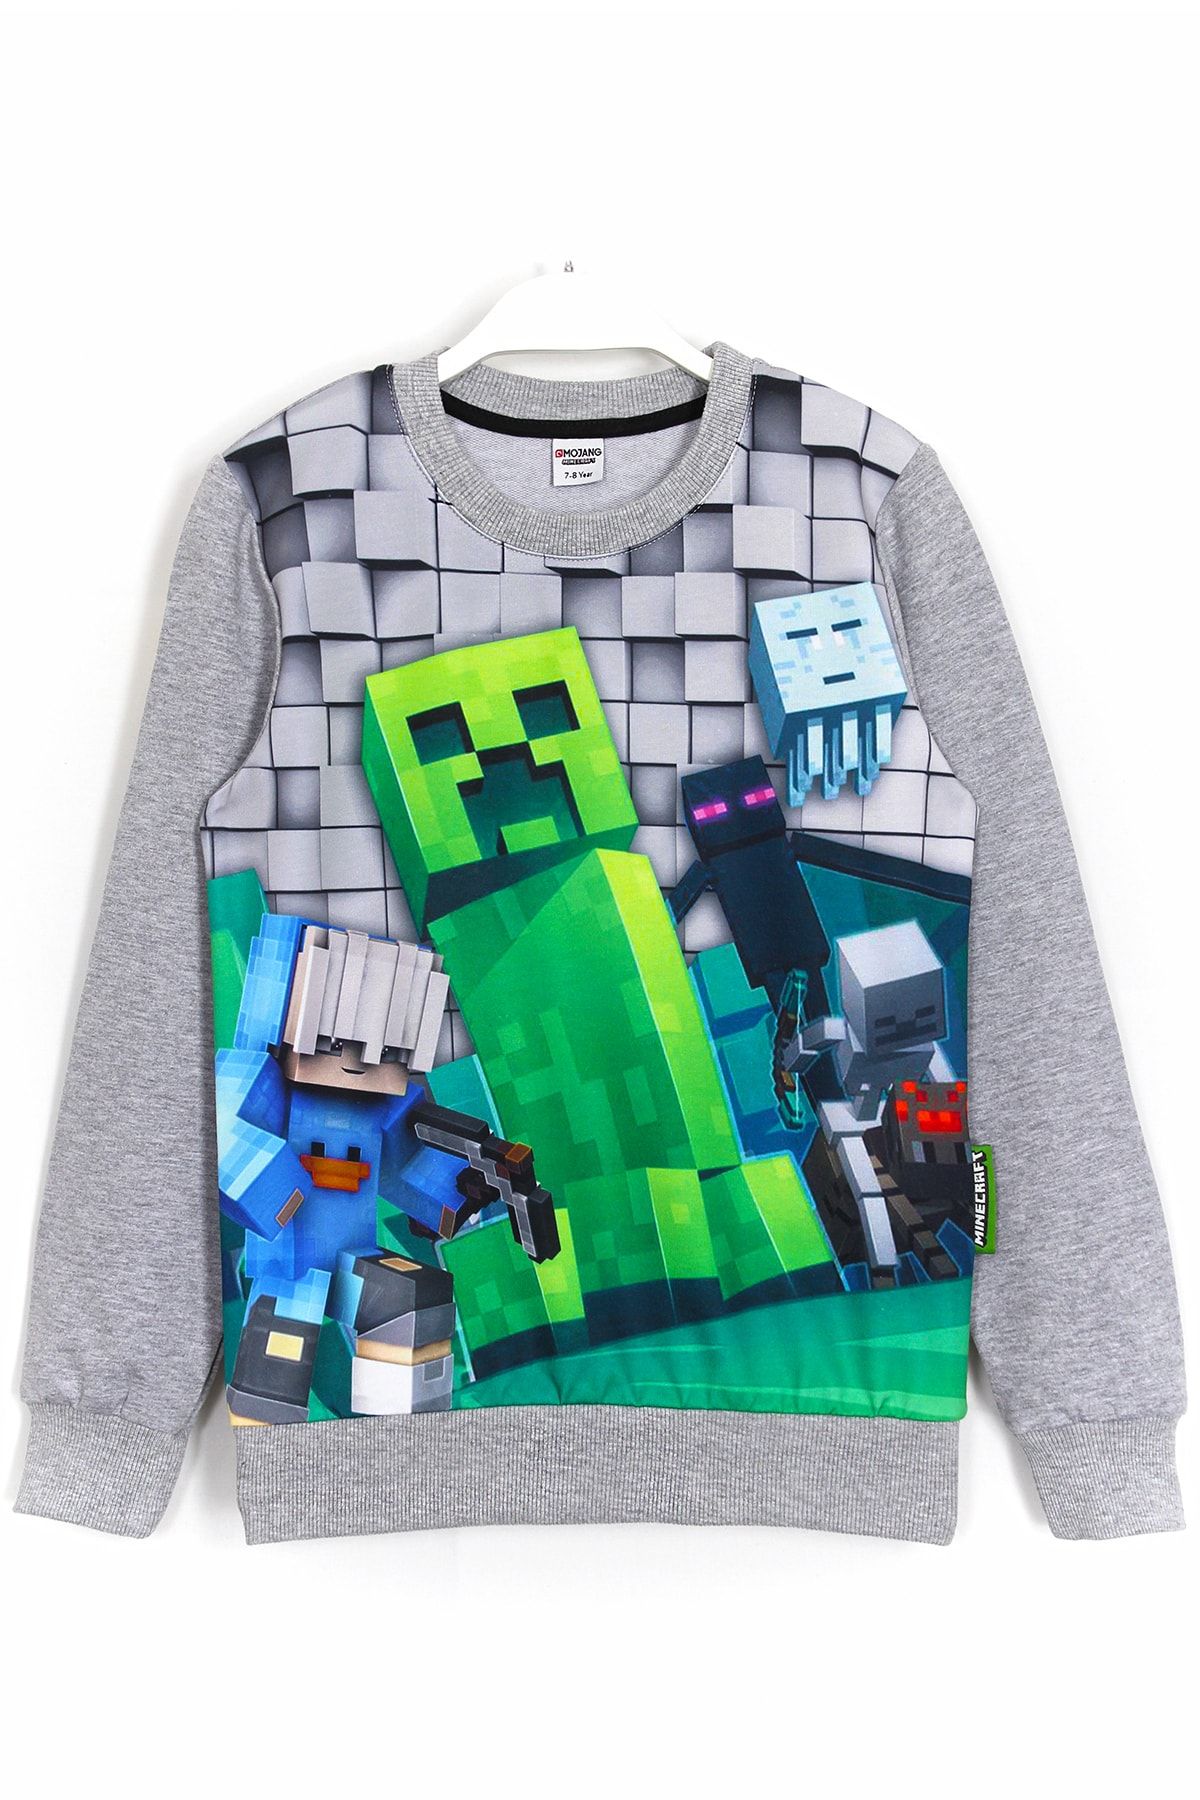 DobaKids 3d Minecraft Creeper Baskılı Erkek Çocuk Sweatshirt Gri